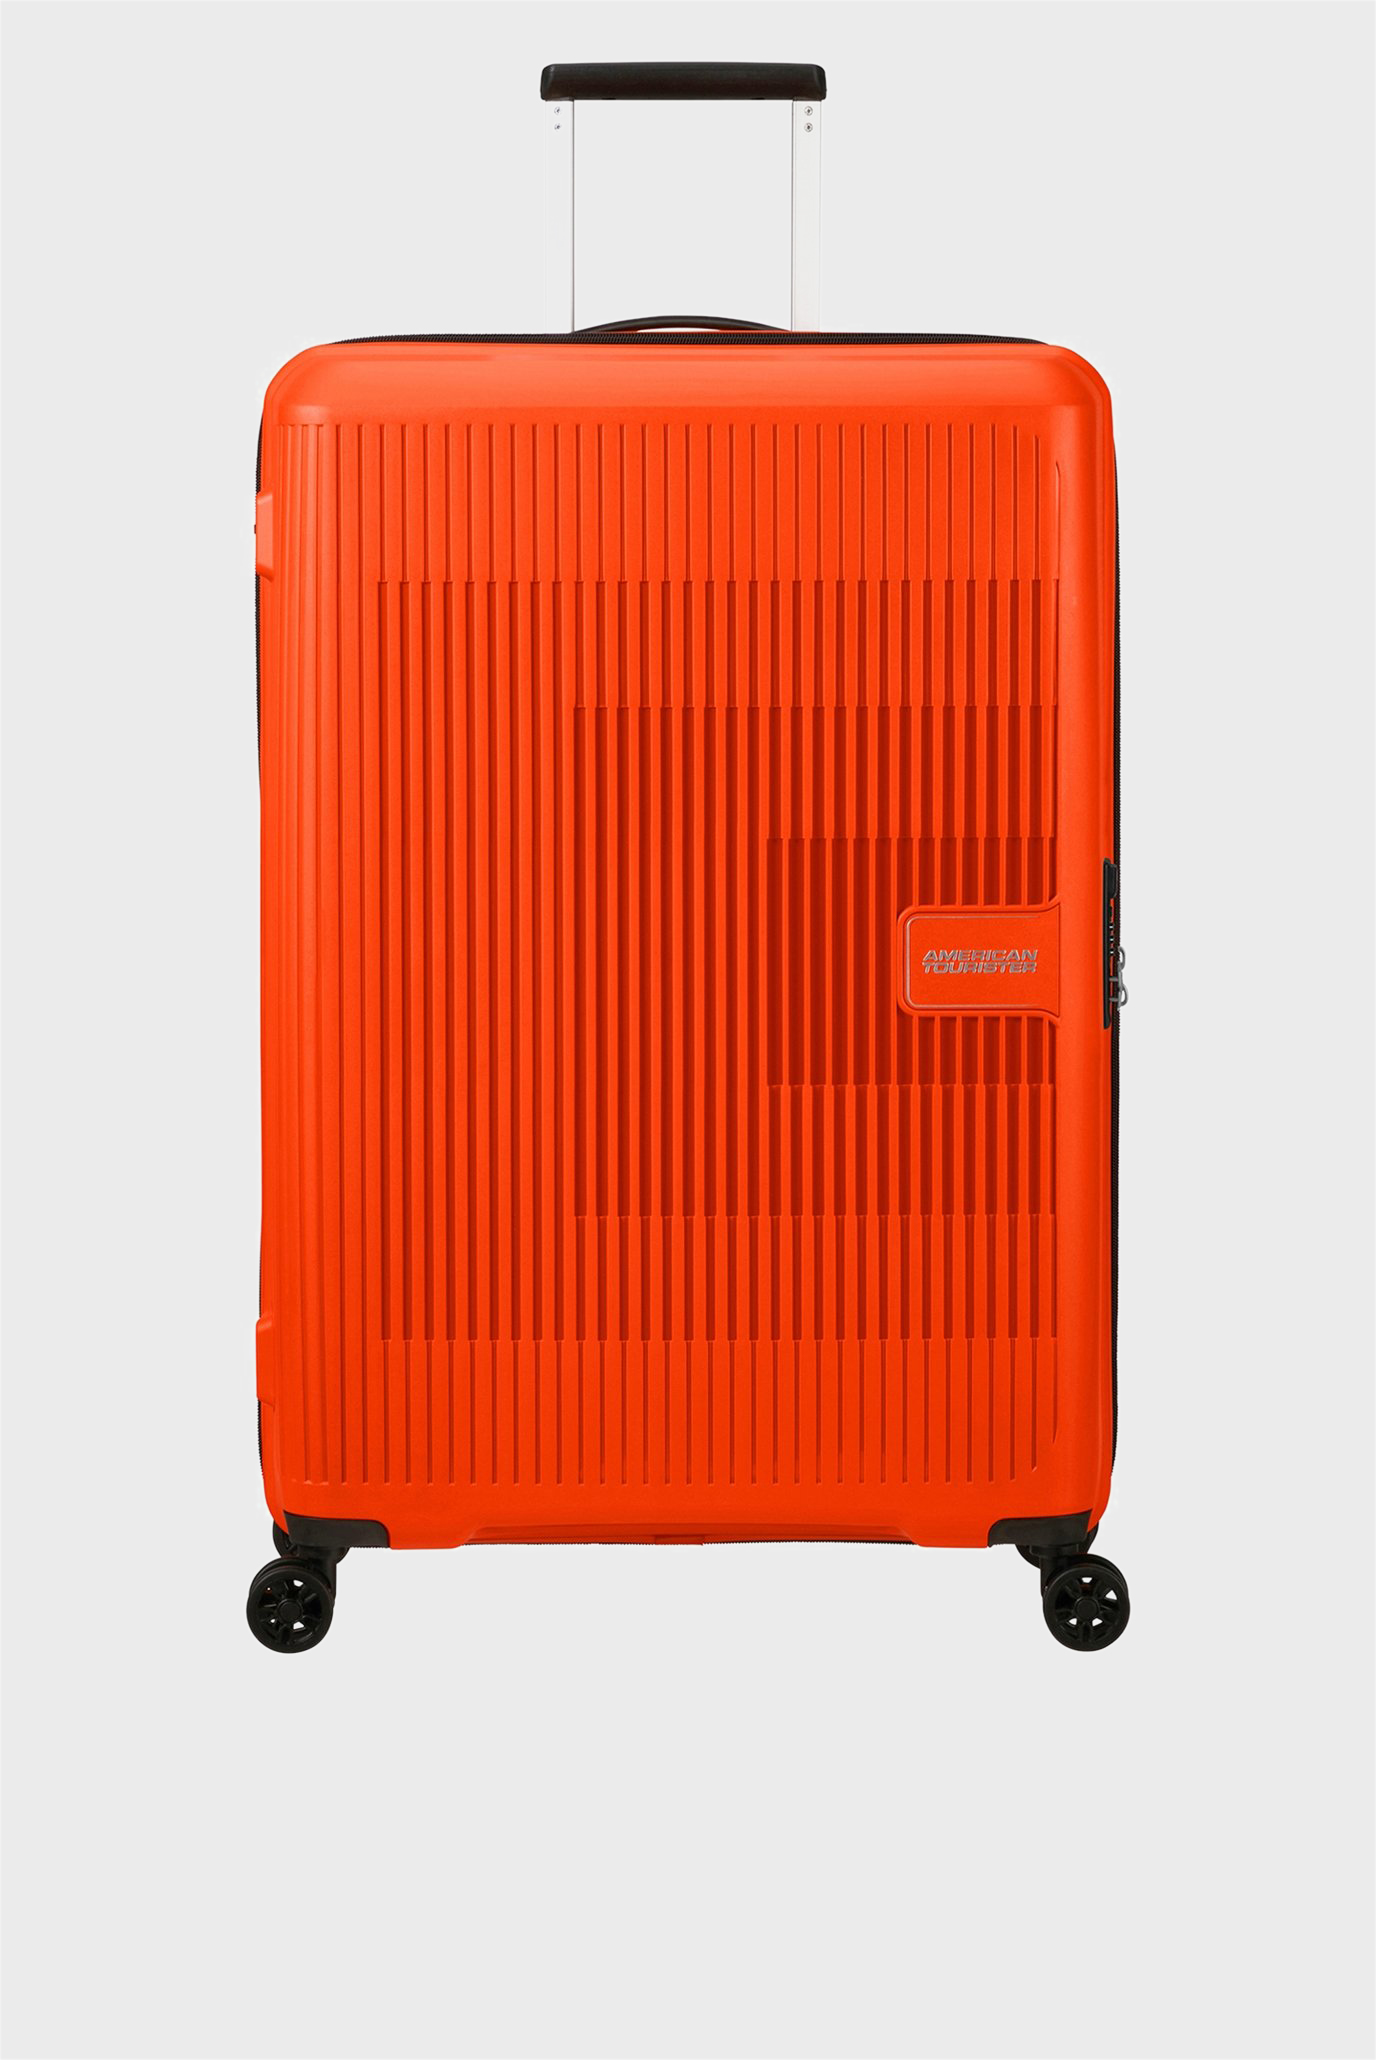 Оранжевый чемодан 77 см AEROSTEP ORANGE 1